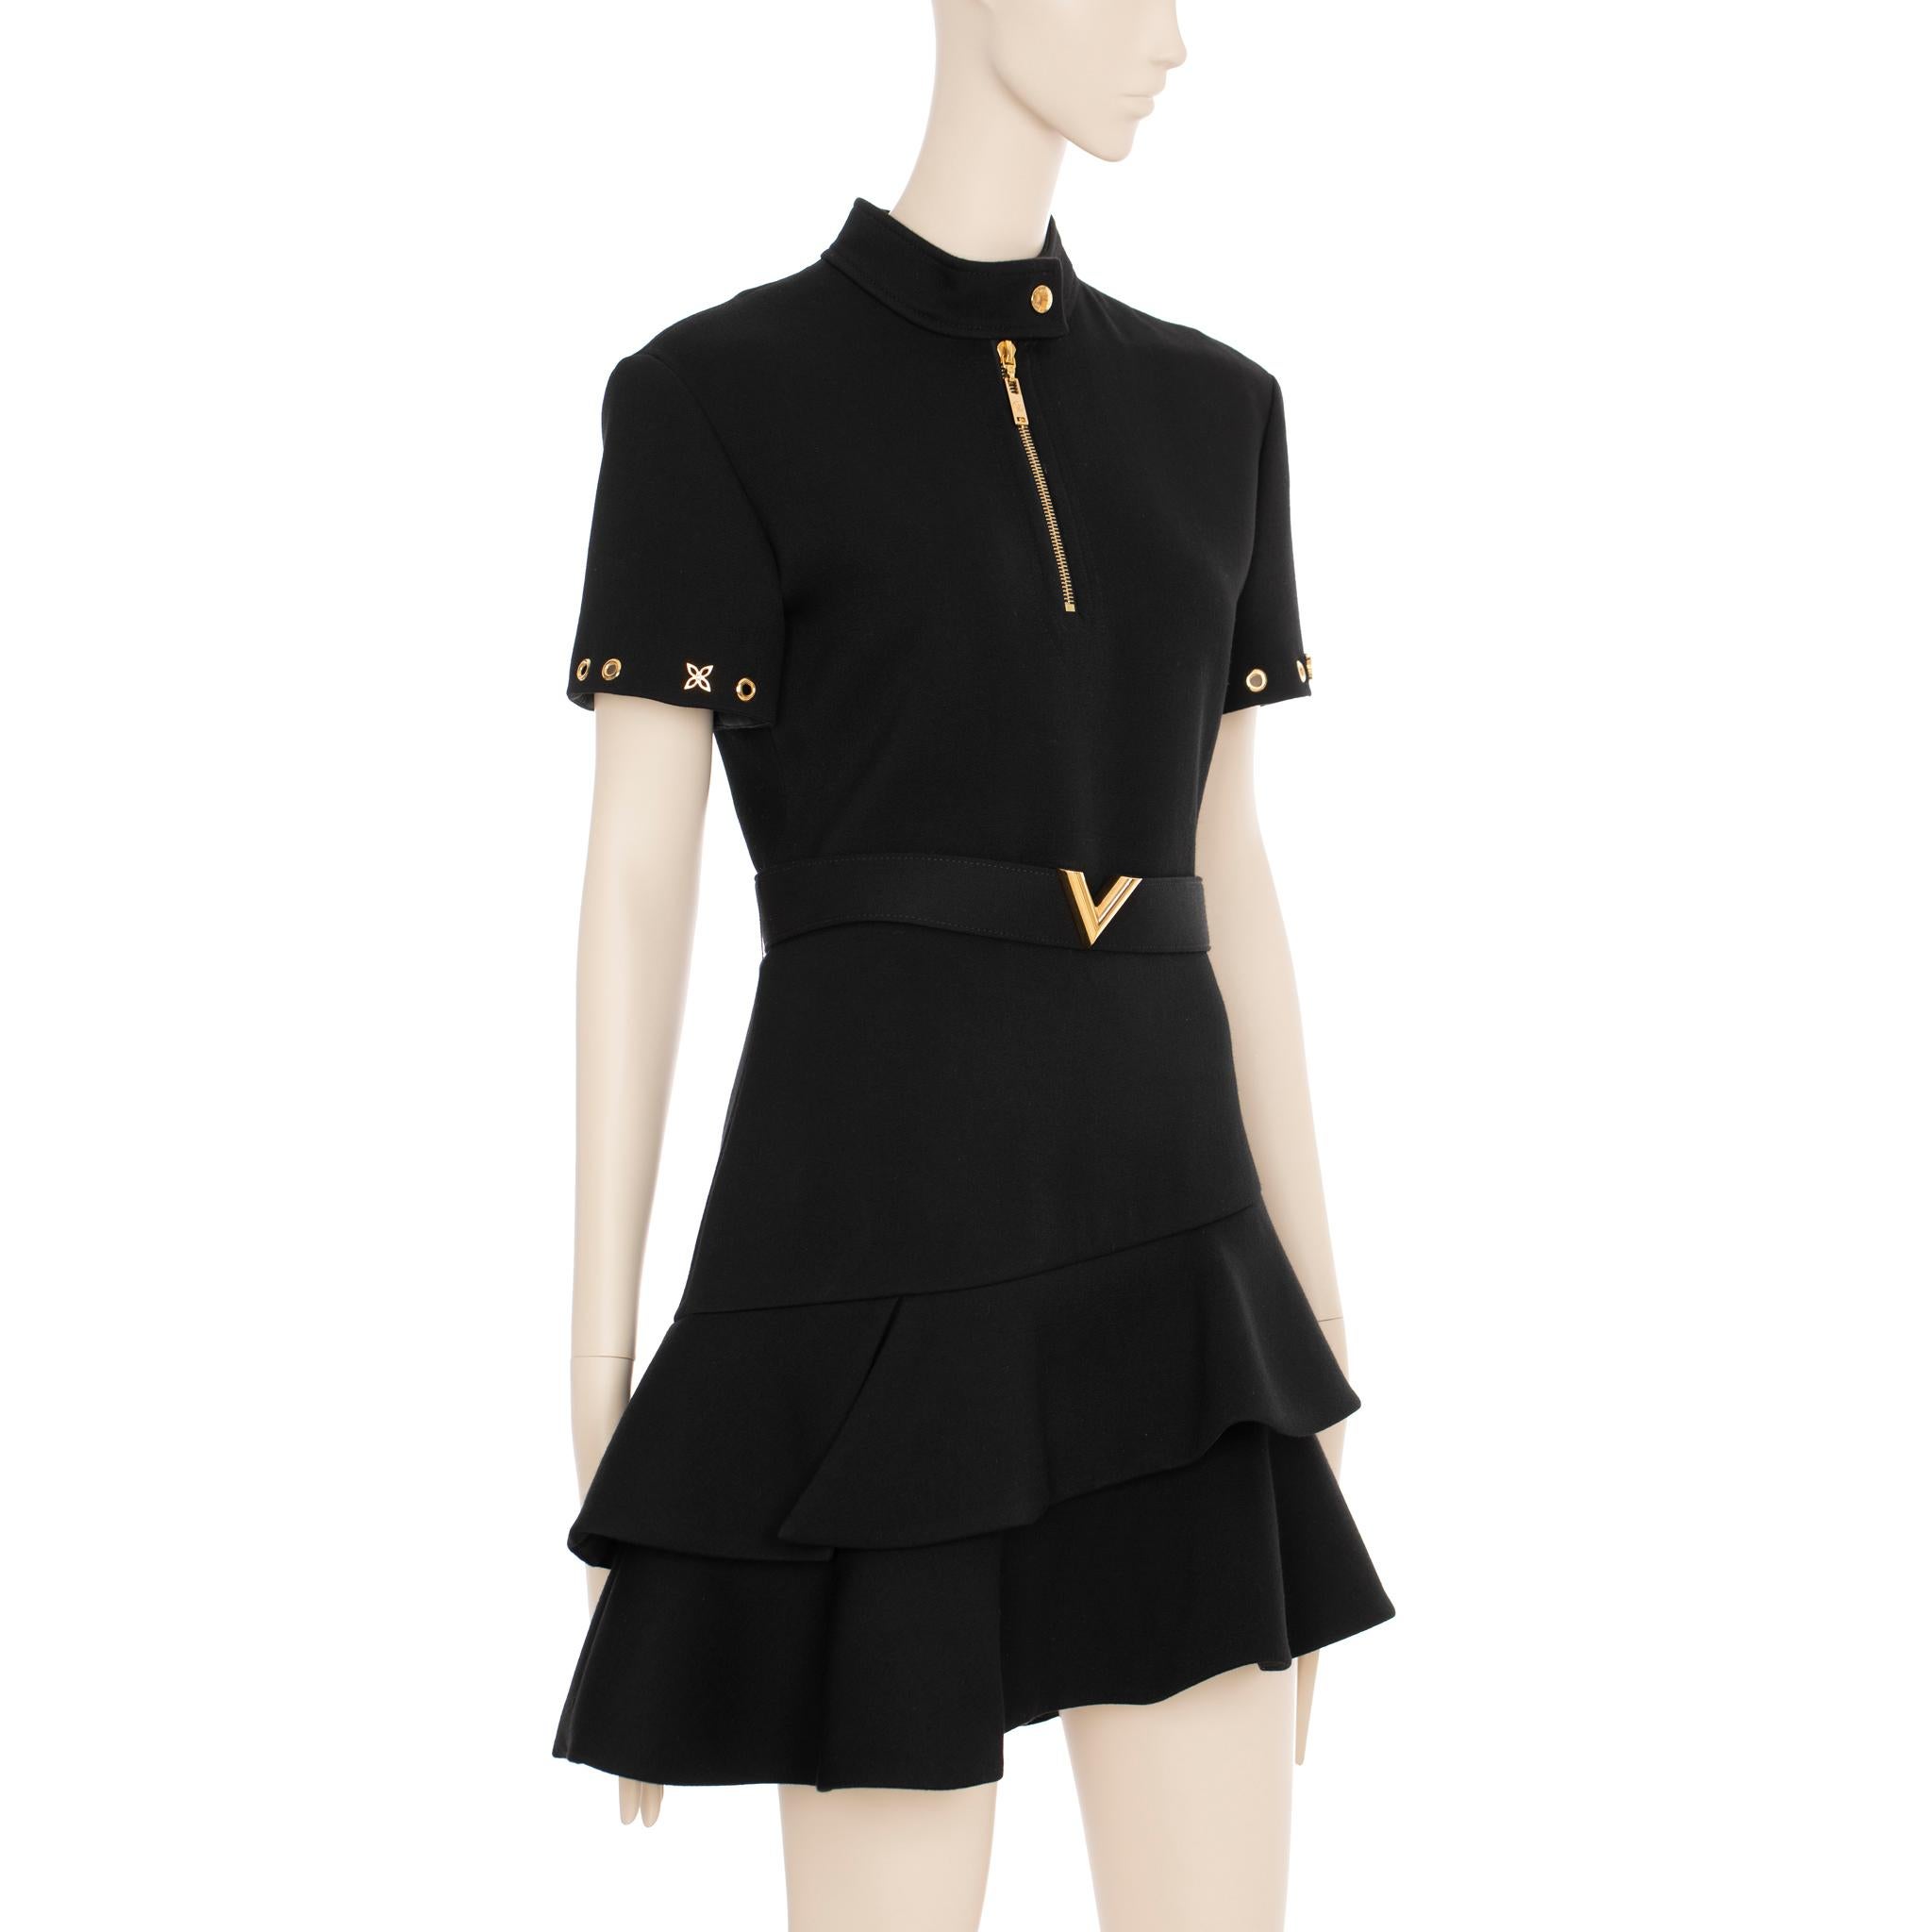 Dieses zeitlose Louis Vuitton Kleid mit klassischem Schößchenrock ist perfekt für jeden formellen Anlass. Das aus einem luxuriösen schwarzen Stoff gefertigte Kleid ist schick und stilvoll und wird bei jeder Veranstaltung zum Hingucker.

Marke: Louis